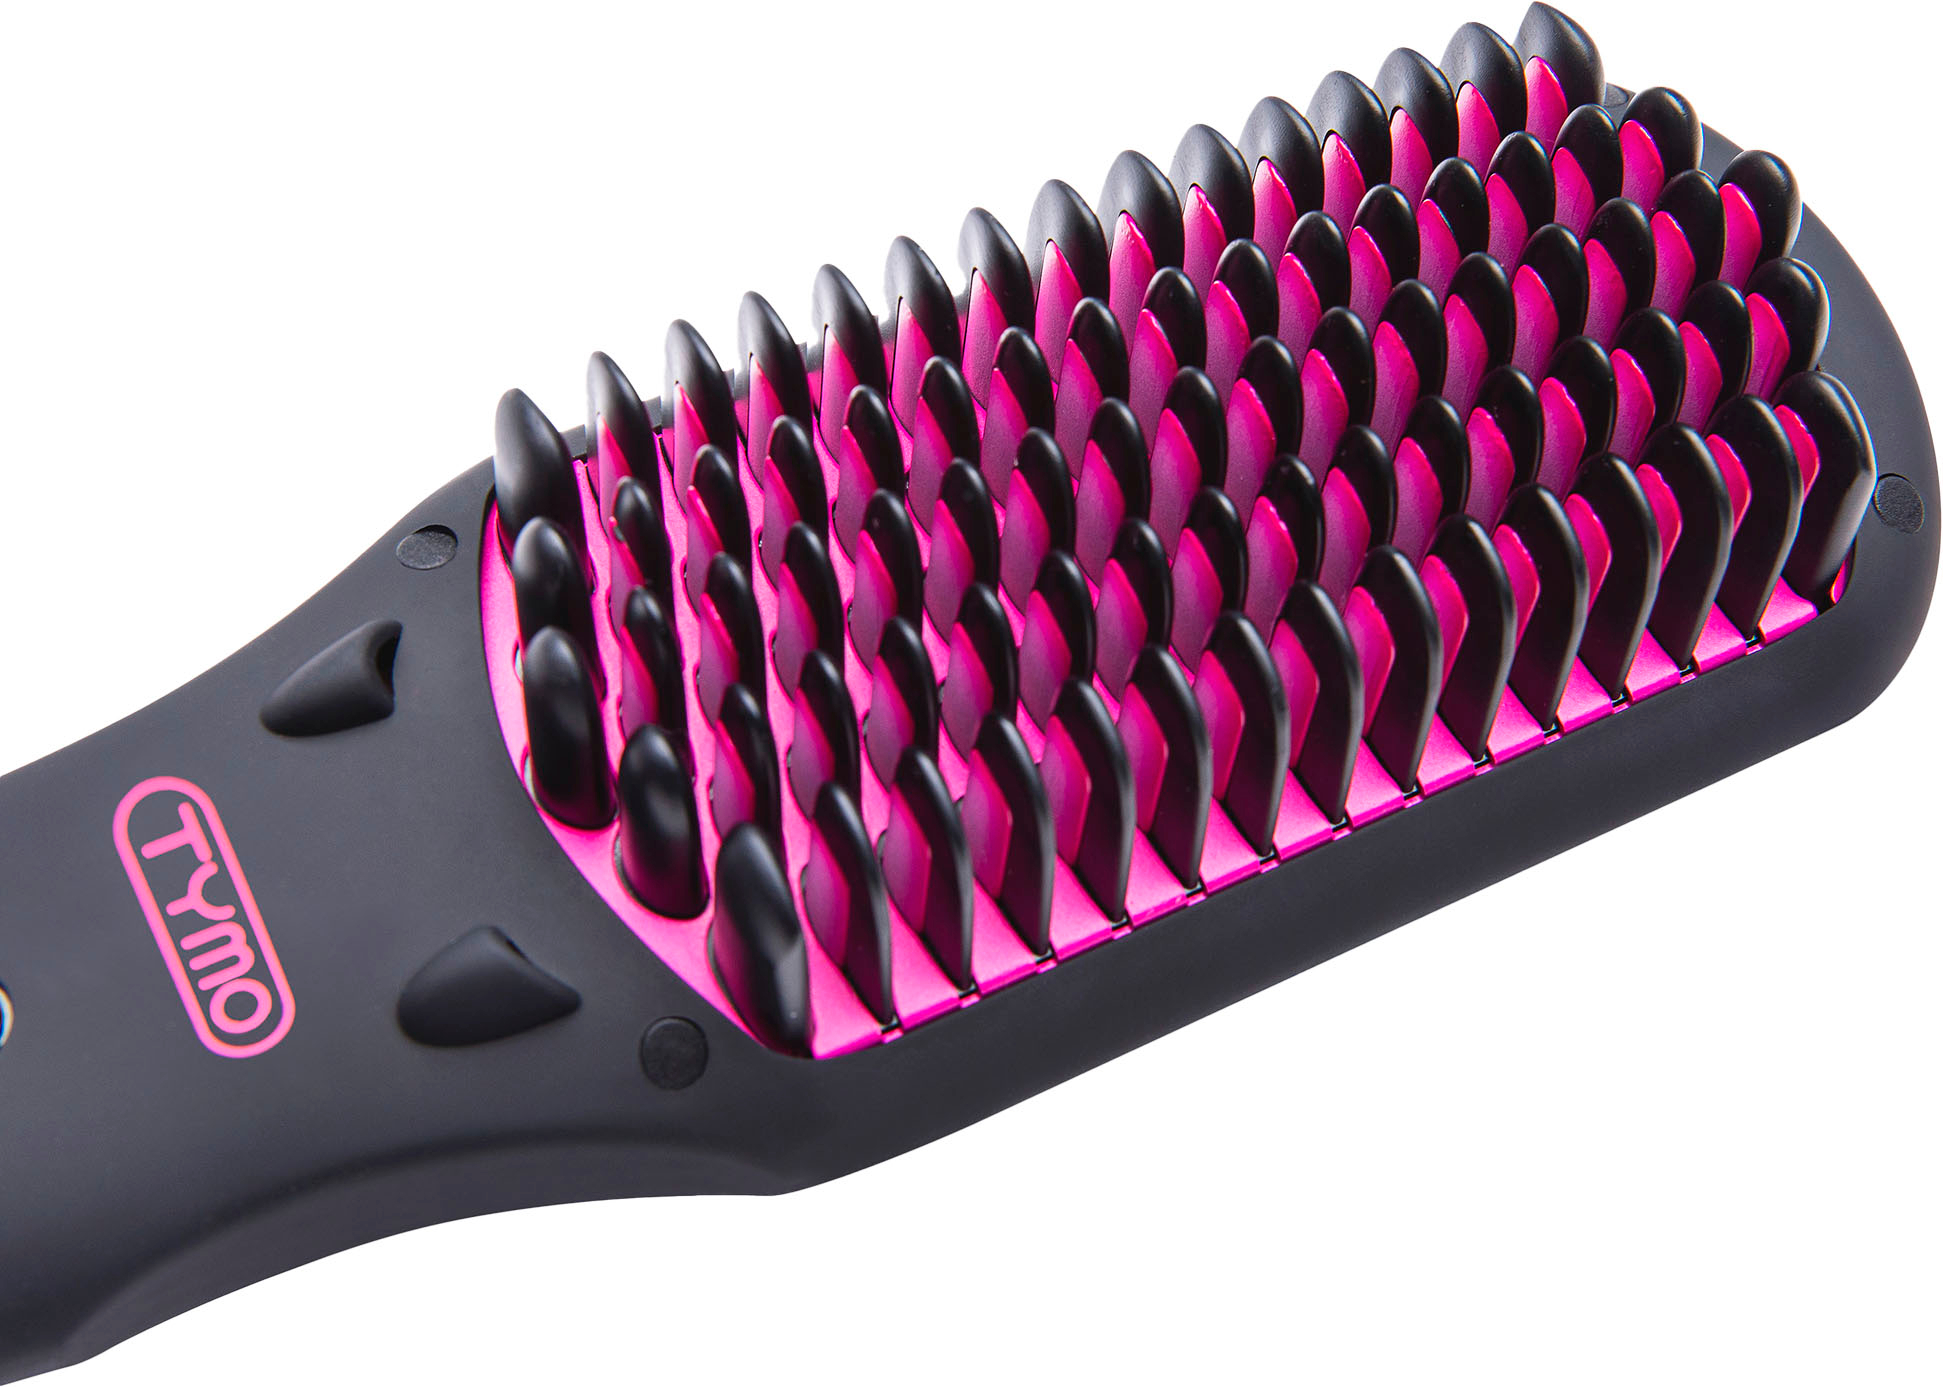 TYMO Ring Hair Straightening Comb Black HC100S - Best Buy